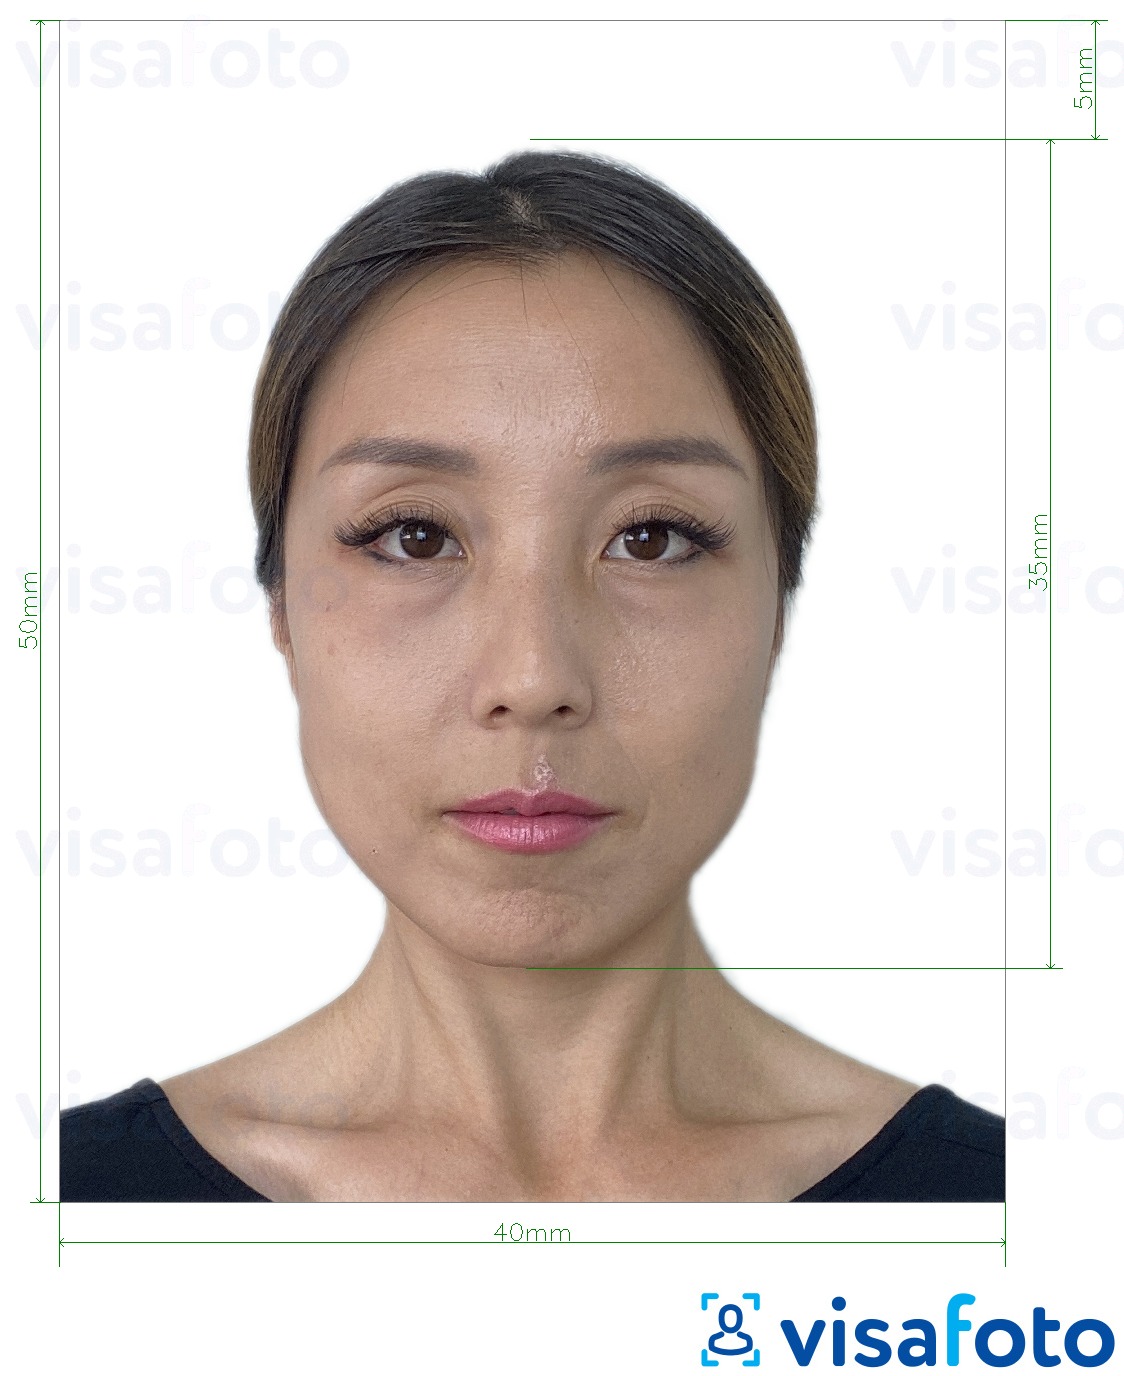 सटीक आकार विनिर्देश के साथ हांगकांग पासपोर्ट 40x50 मिमी (4x5 सेमी) के लिए तस्वीर का उदाहरण